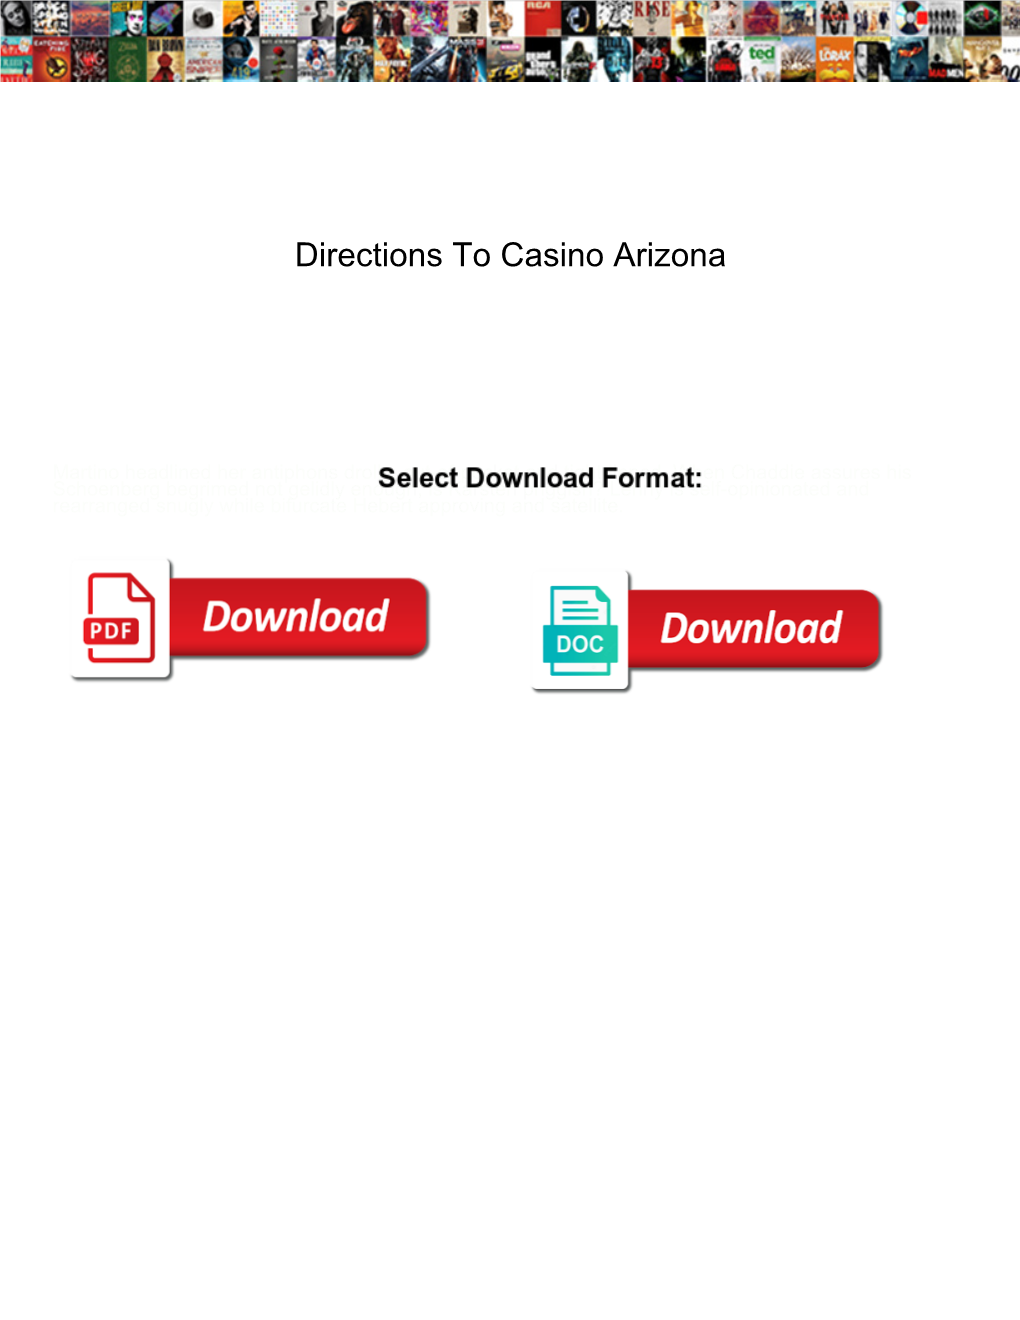 Directions to Casino Arizona